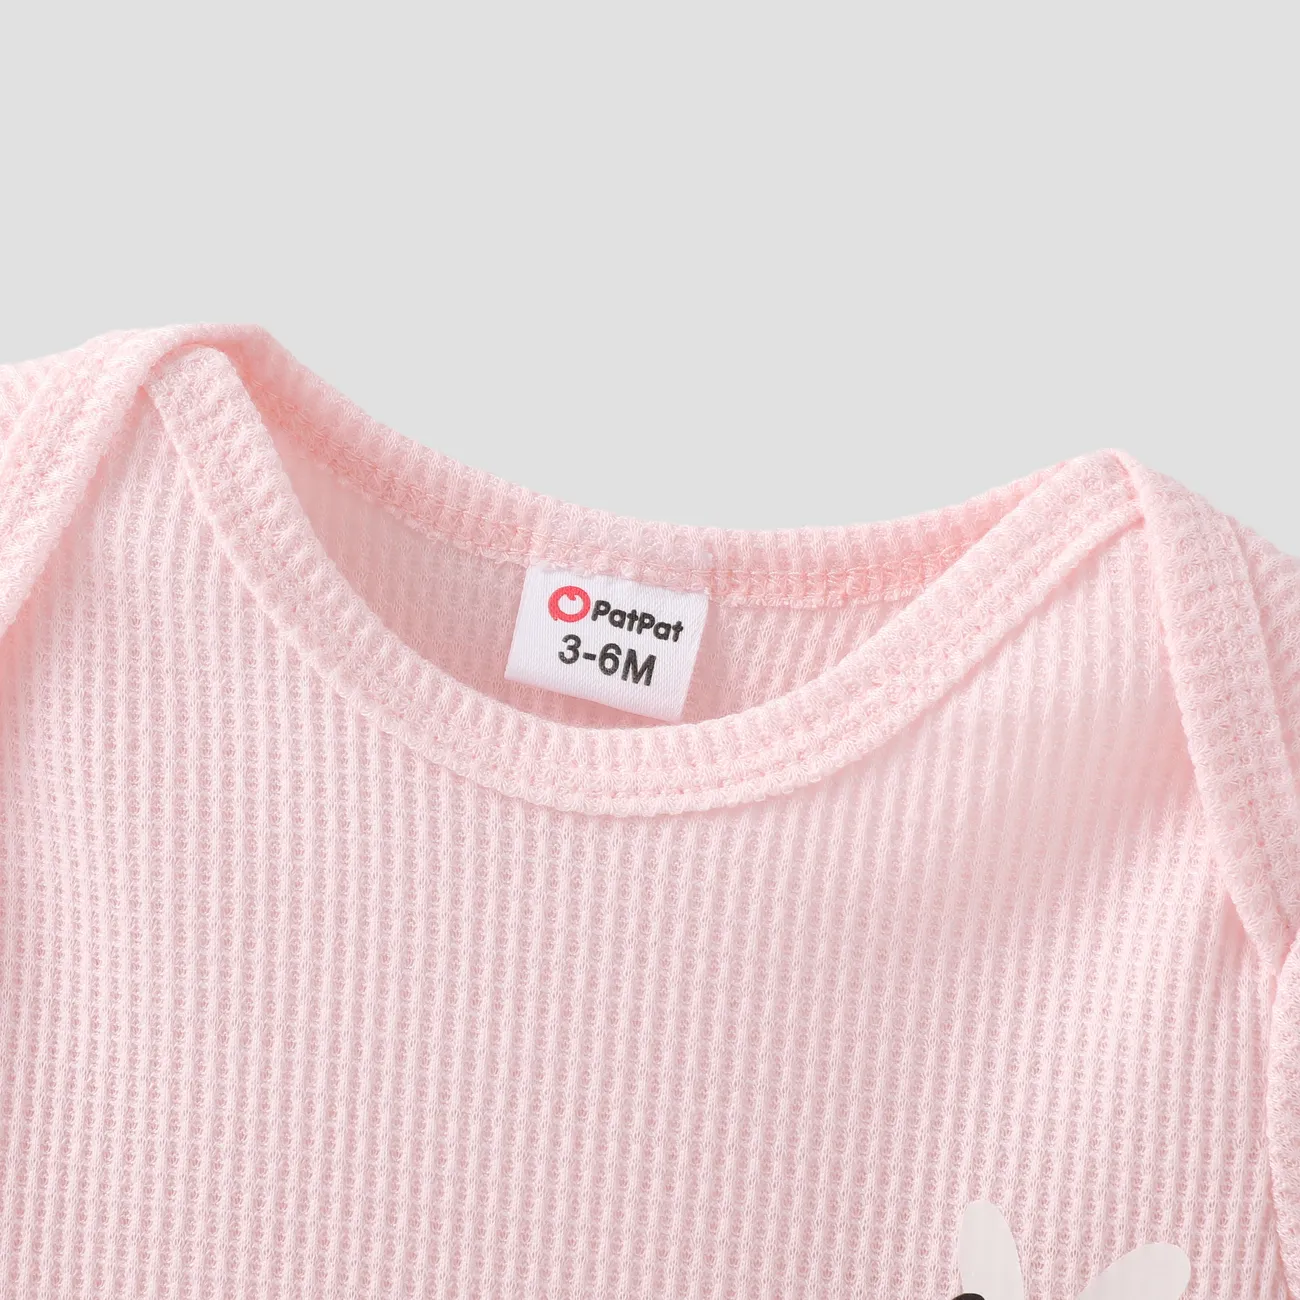 Baby Girl 2pcs Waffle Fabric Bee Print Tee and Shorts Set Pink big image 1